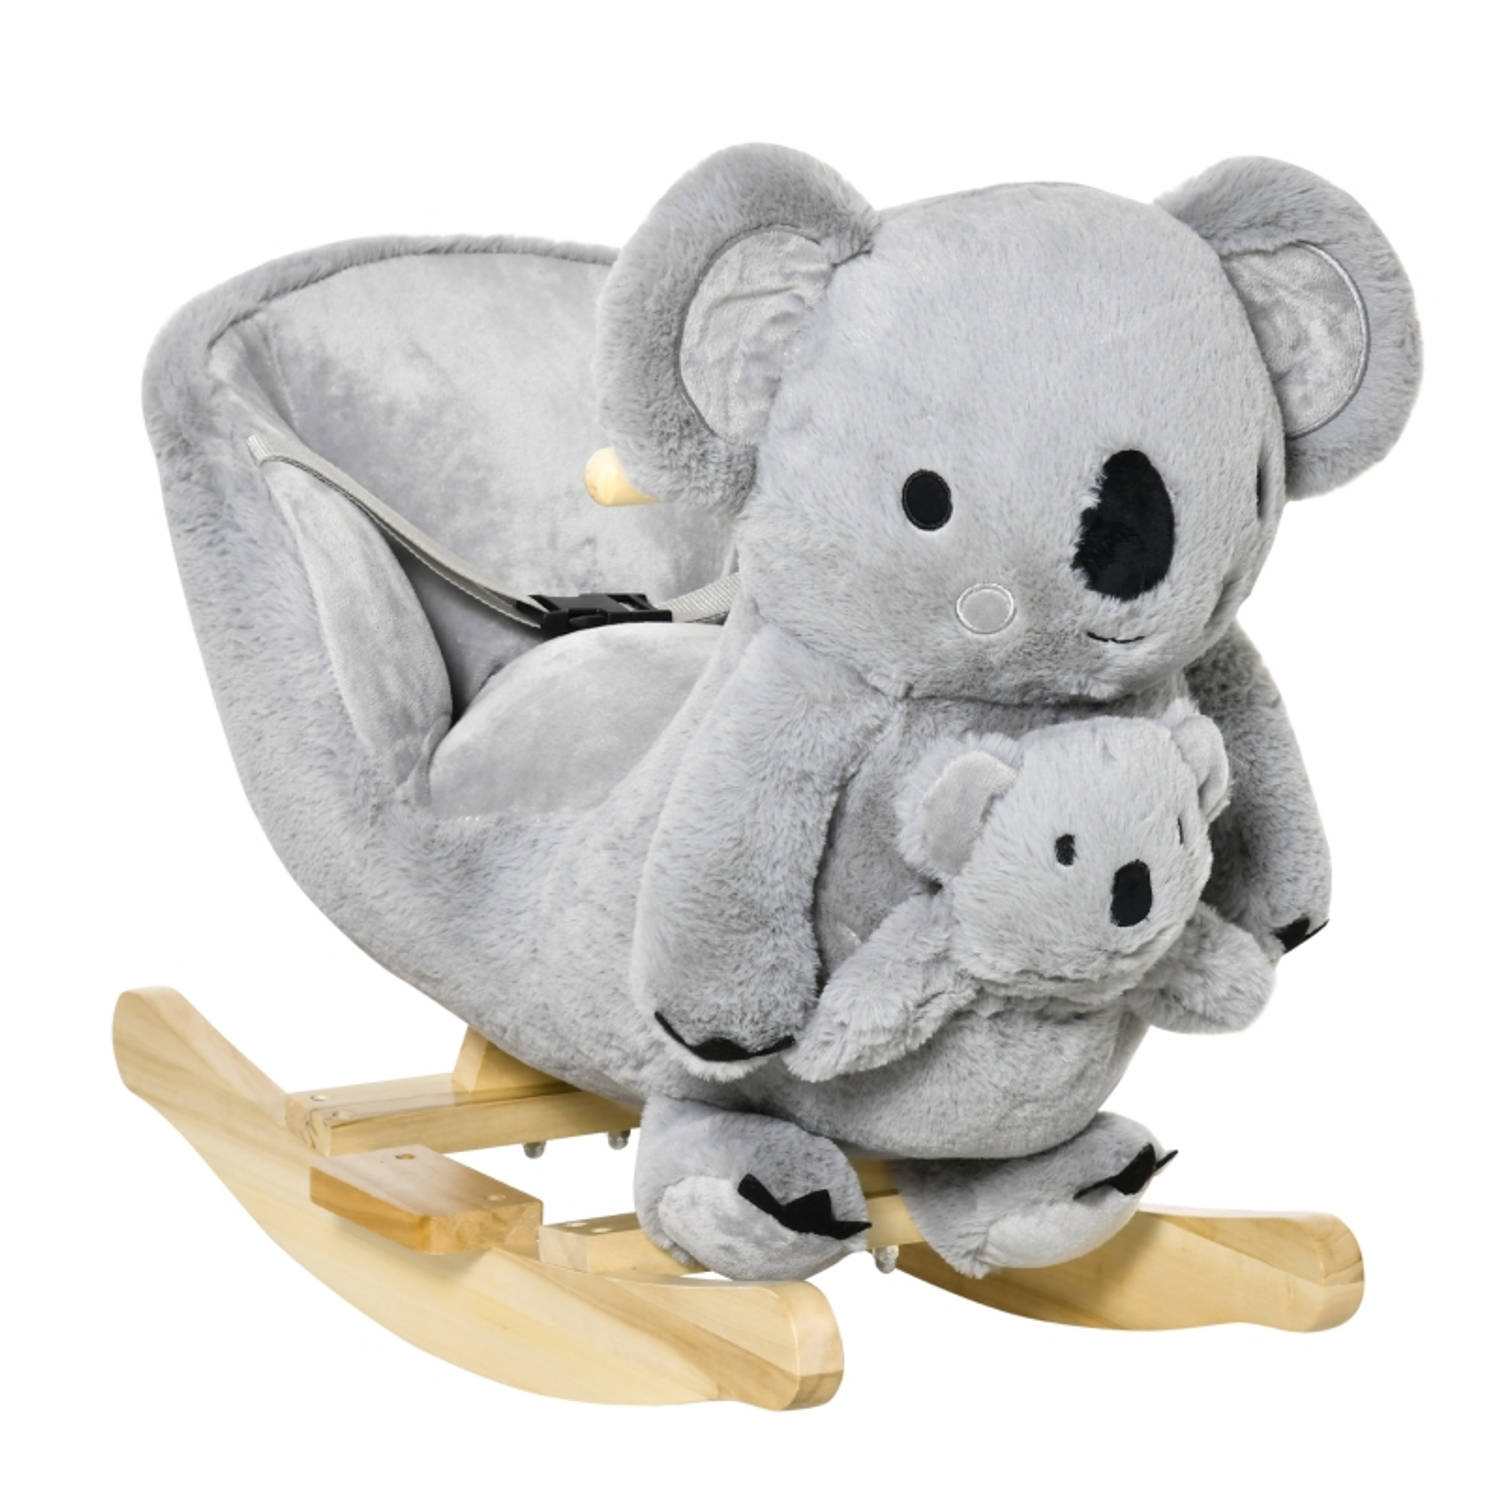 Hobbeldier Koala Hobbelpaard Schommelpaard Schommelstoel voor Kinderen Speelgoed